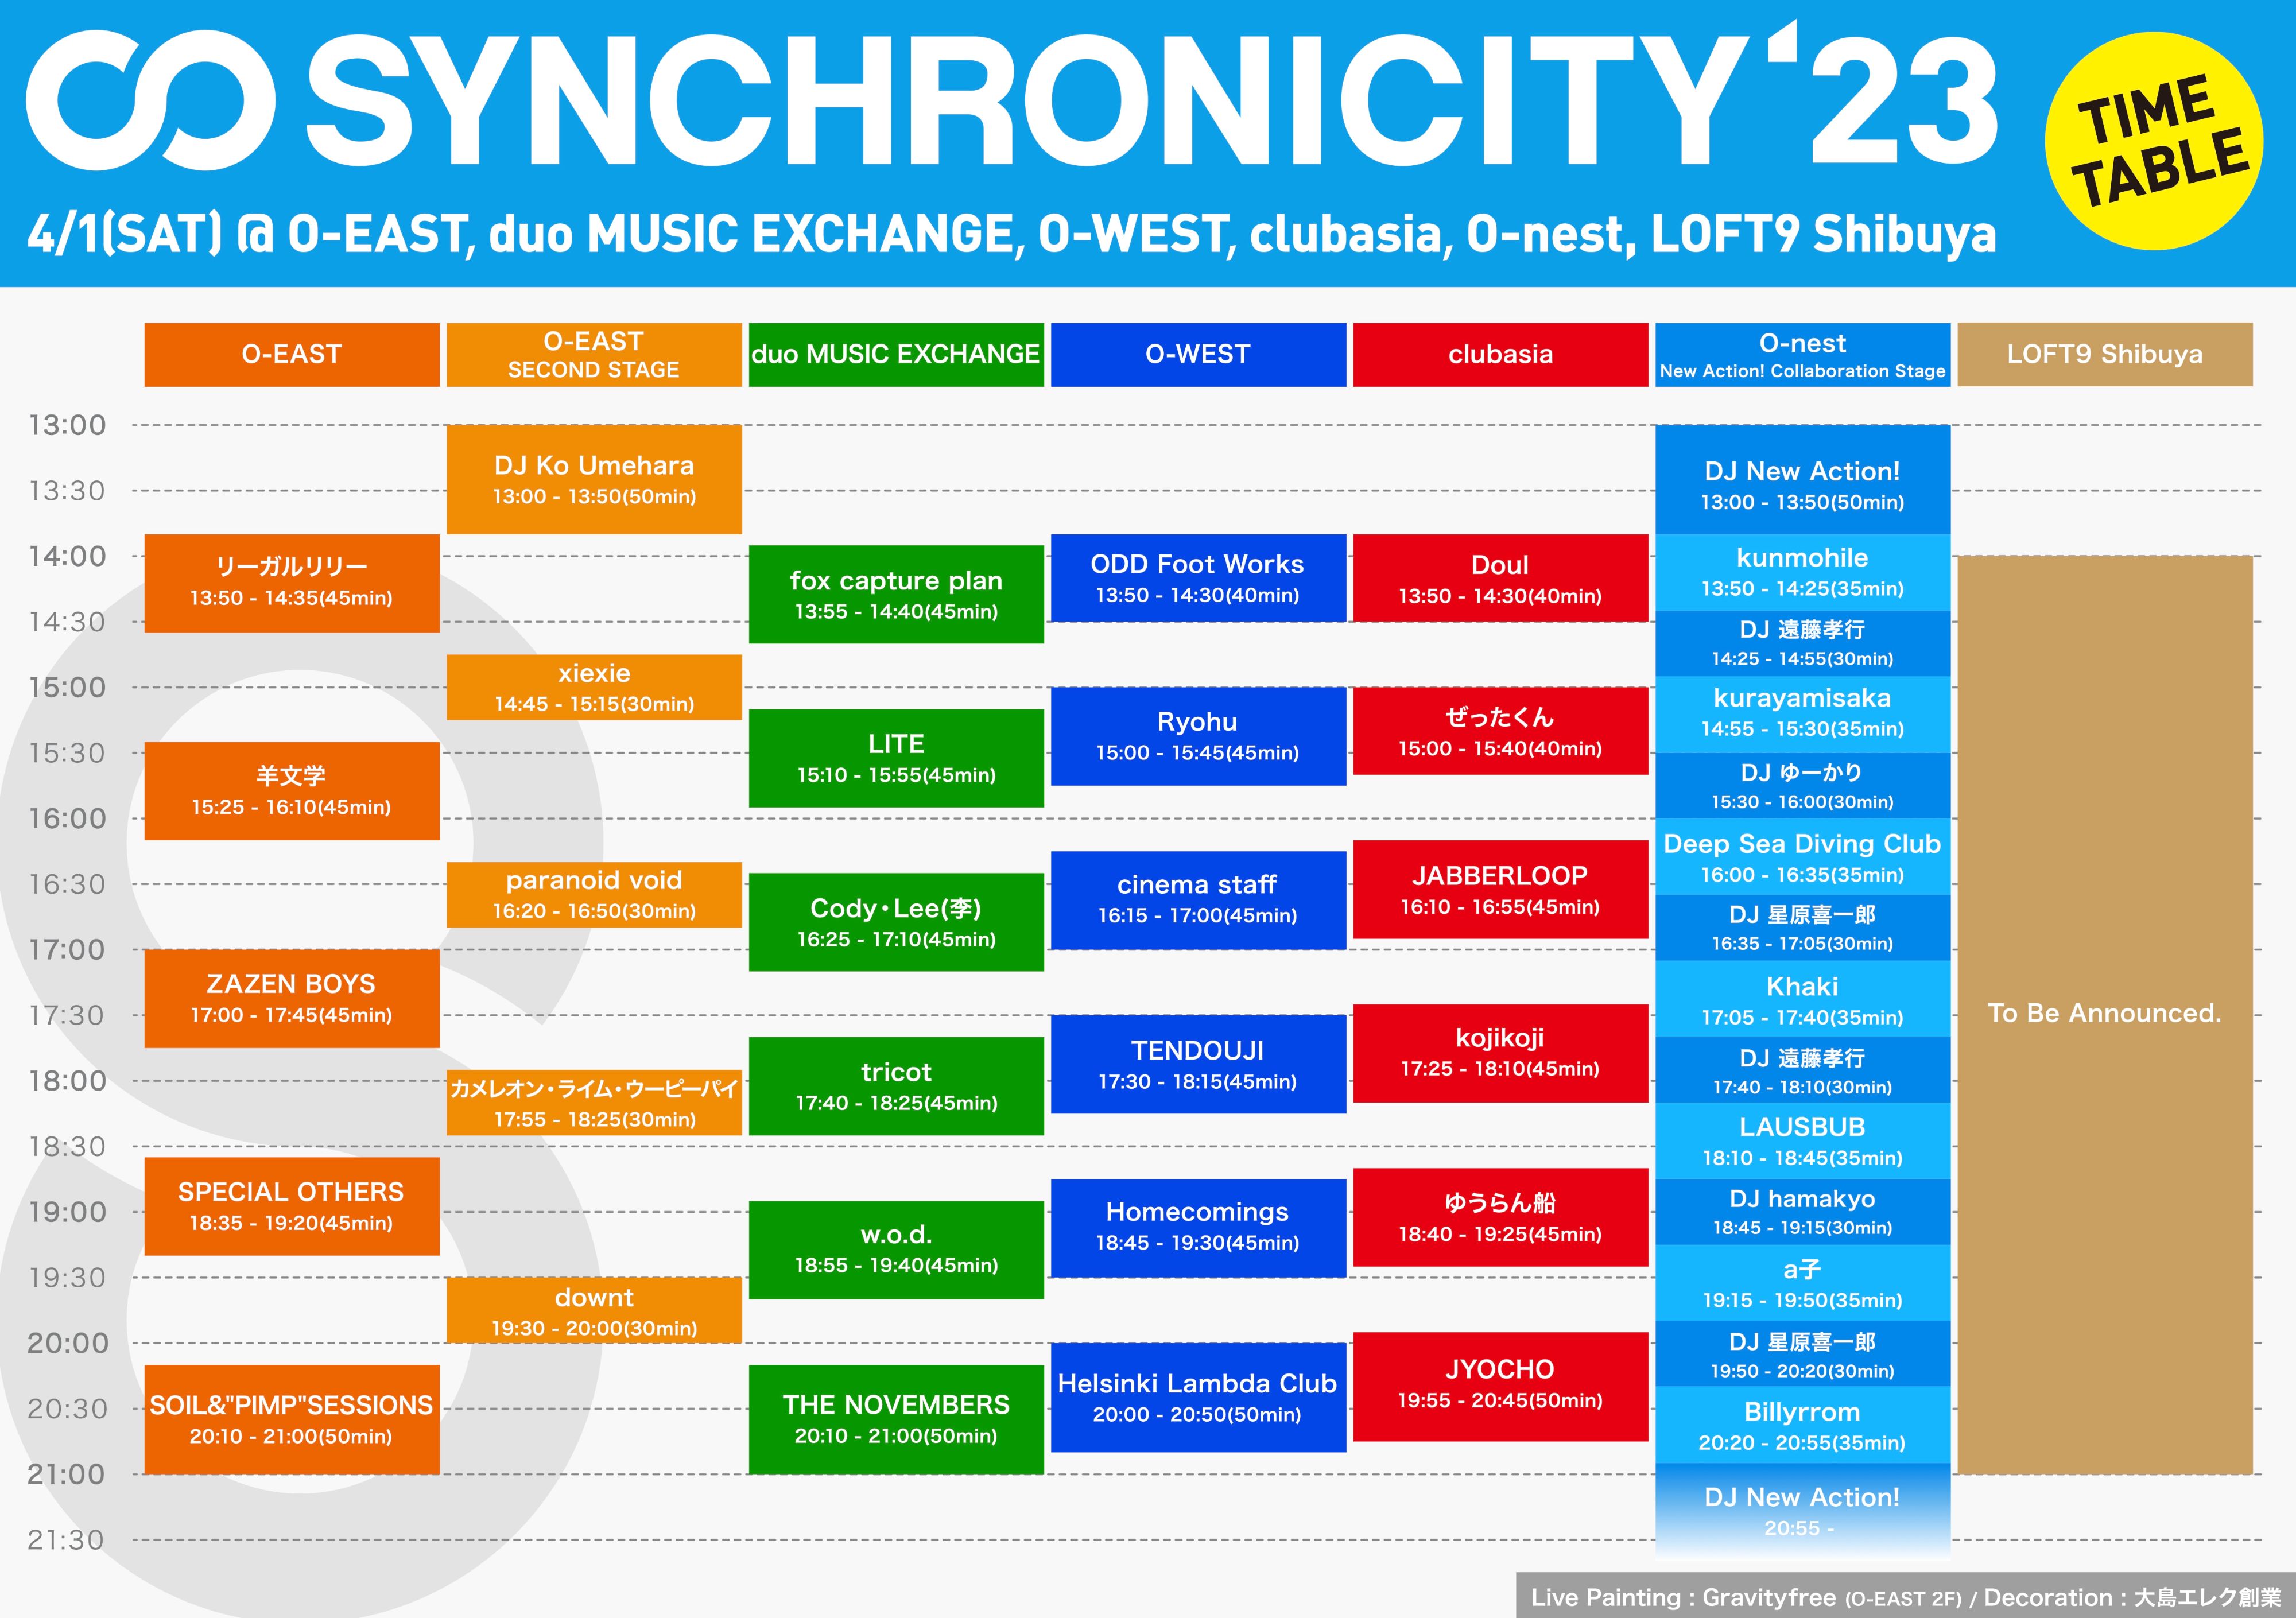 synchro23_timetable_230401_4000px